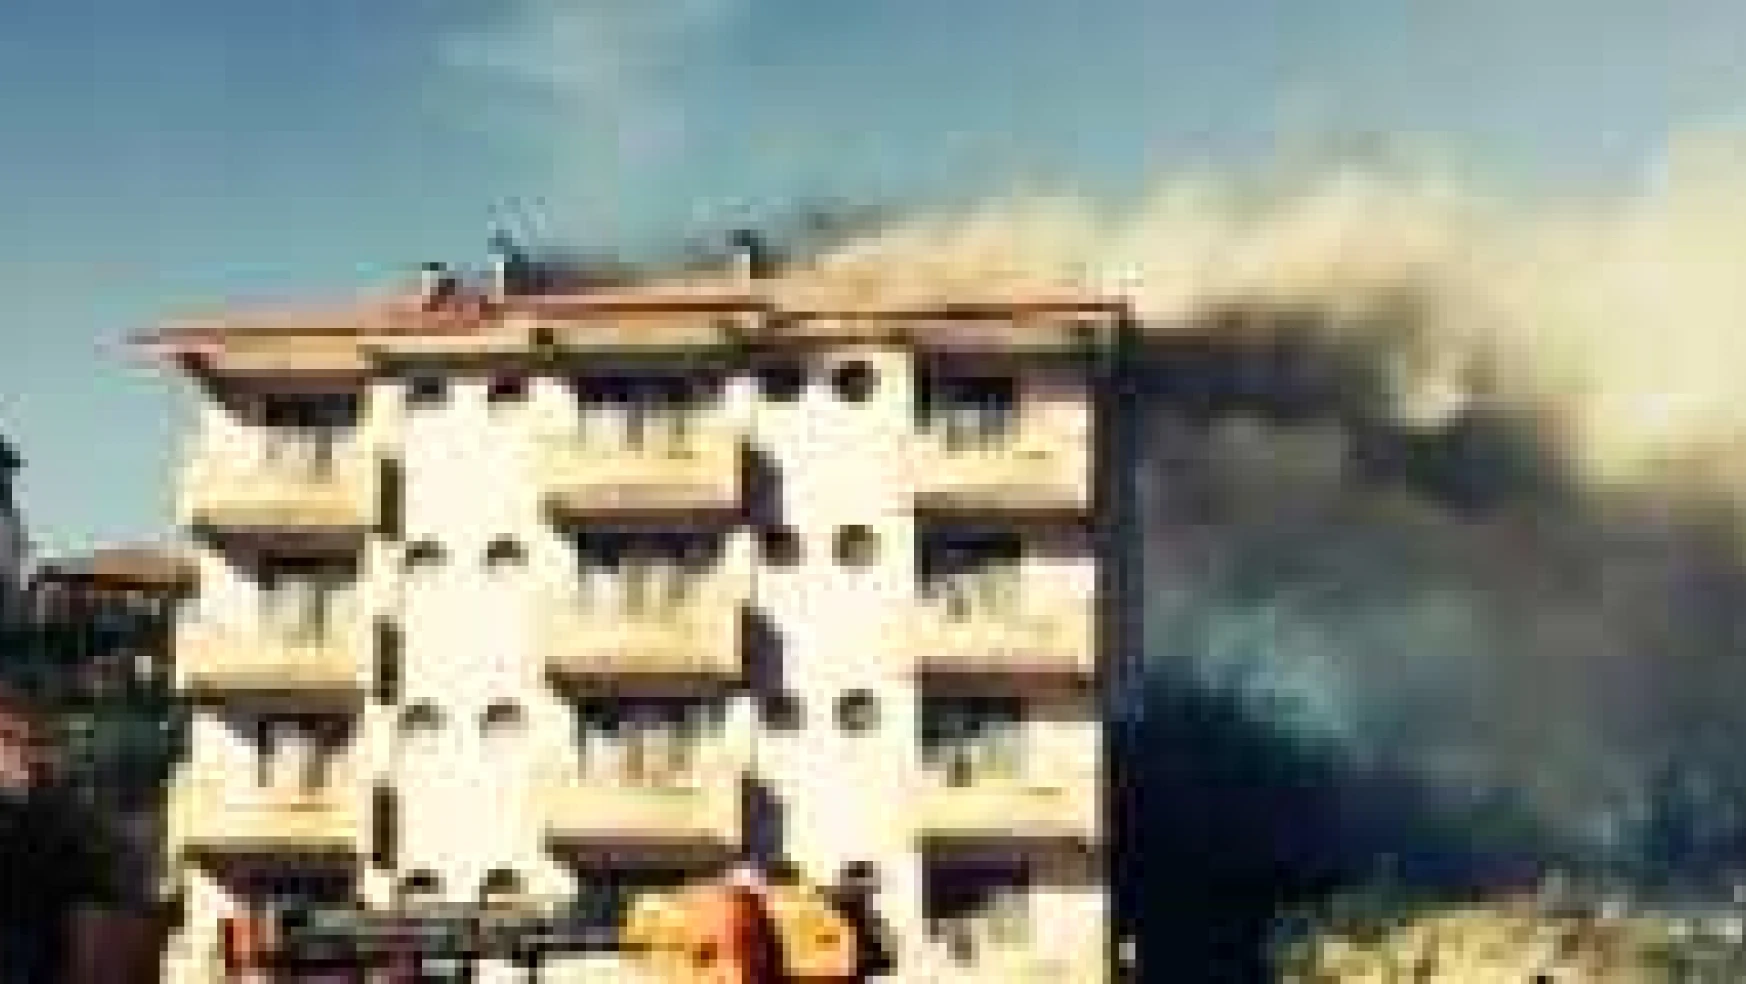 Amasra'da Otel Yangını Korkuttu